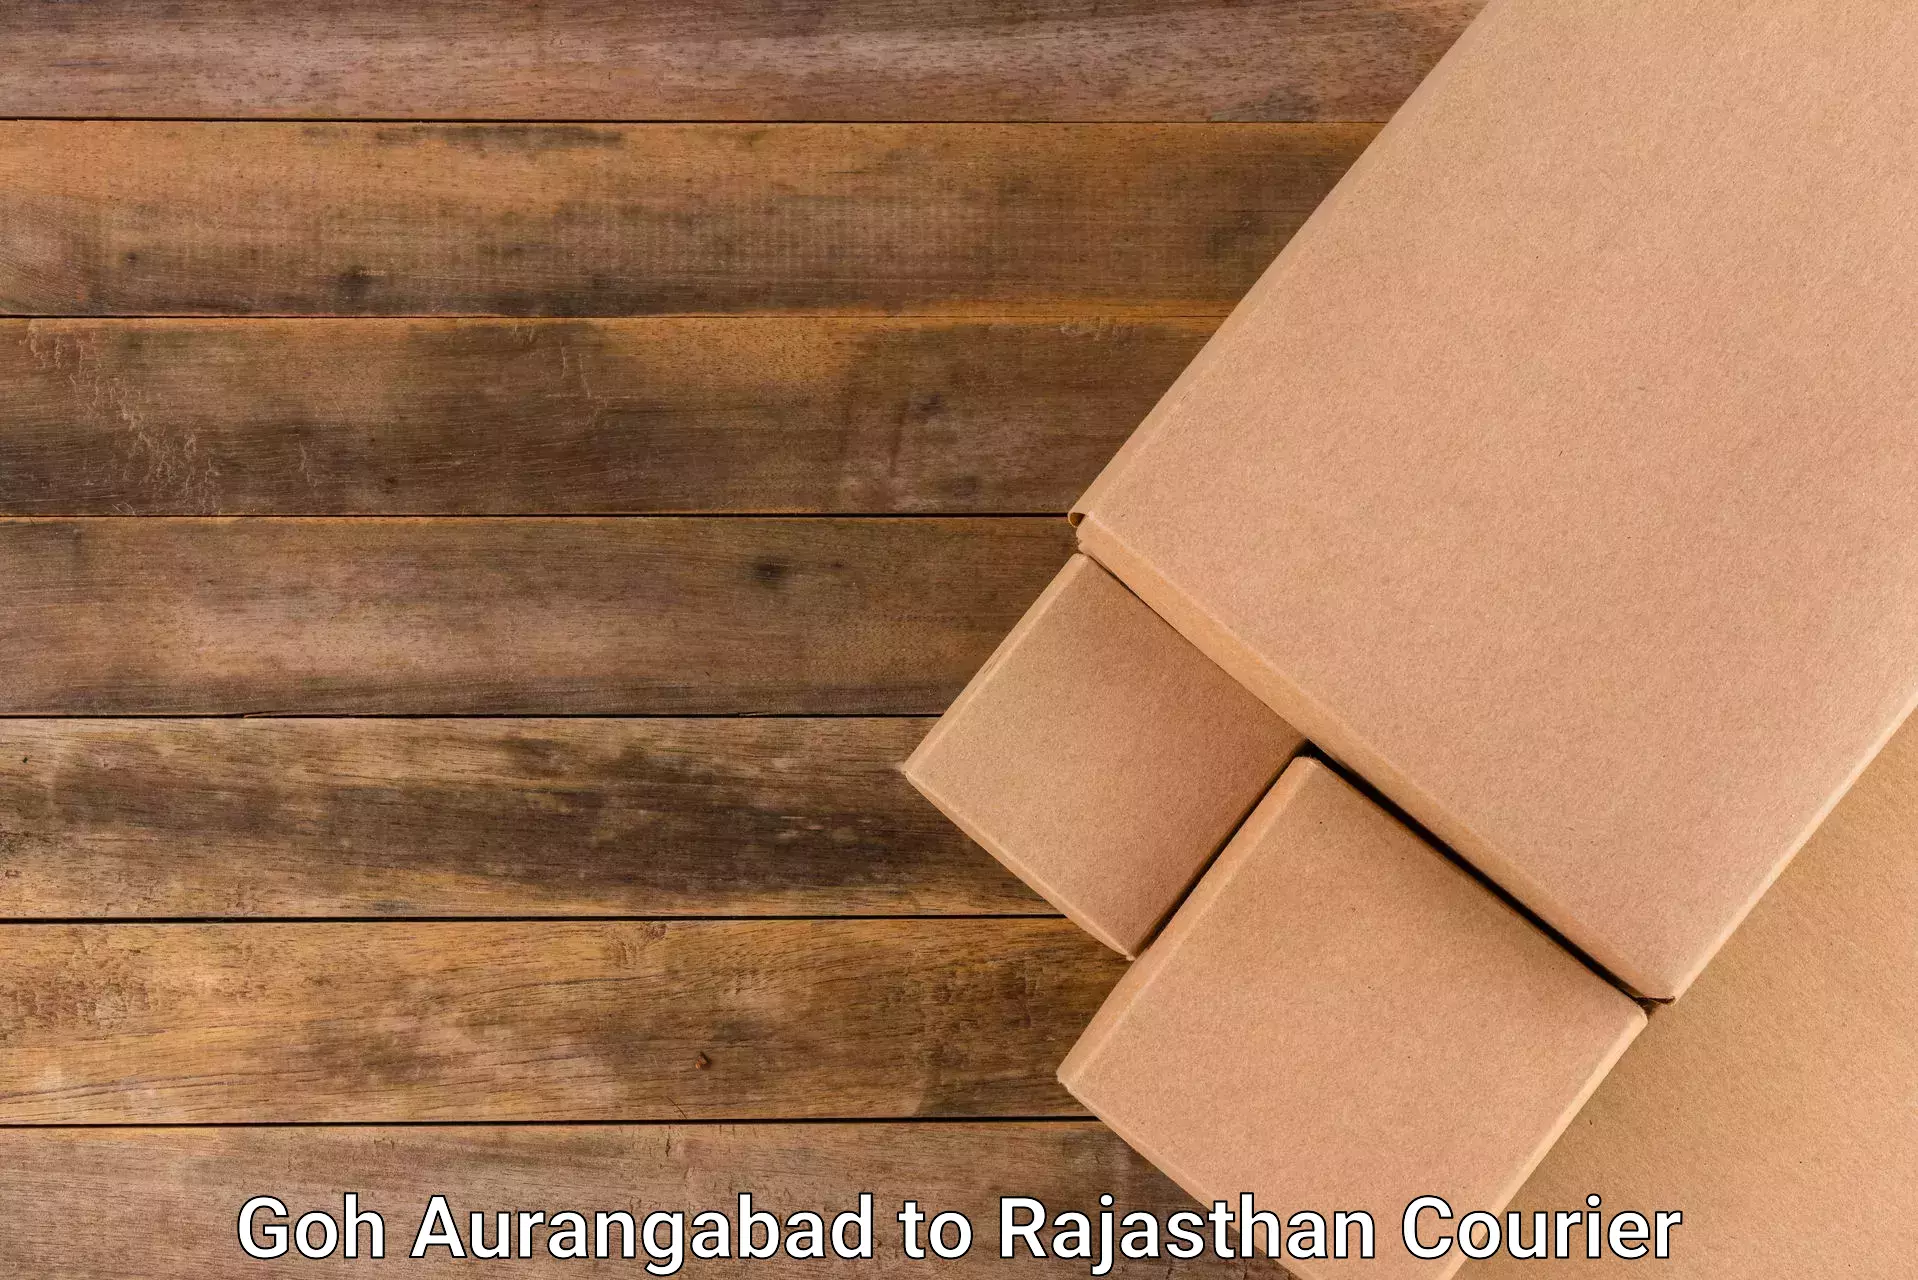 Tech-enabled shipping Goh Aurangabad to Shrimadhopur